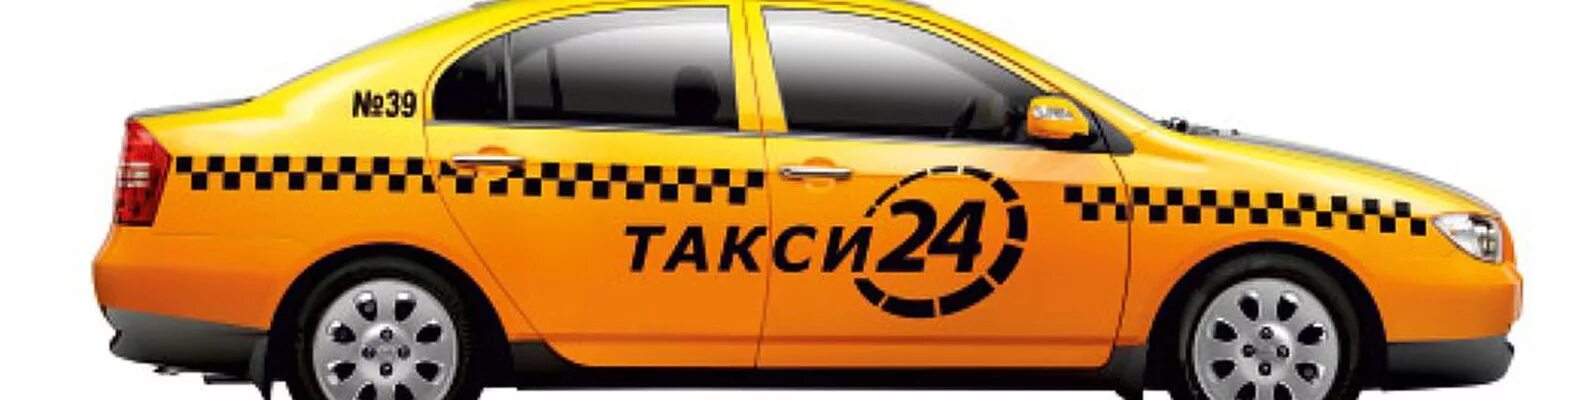 Такси буда. Машина "такси". Такси картинки. Такси 24 24 24. Такси в городе.